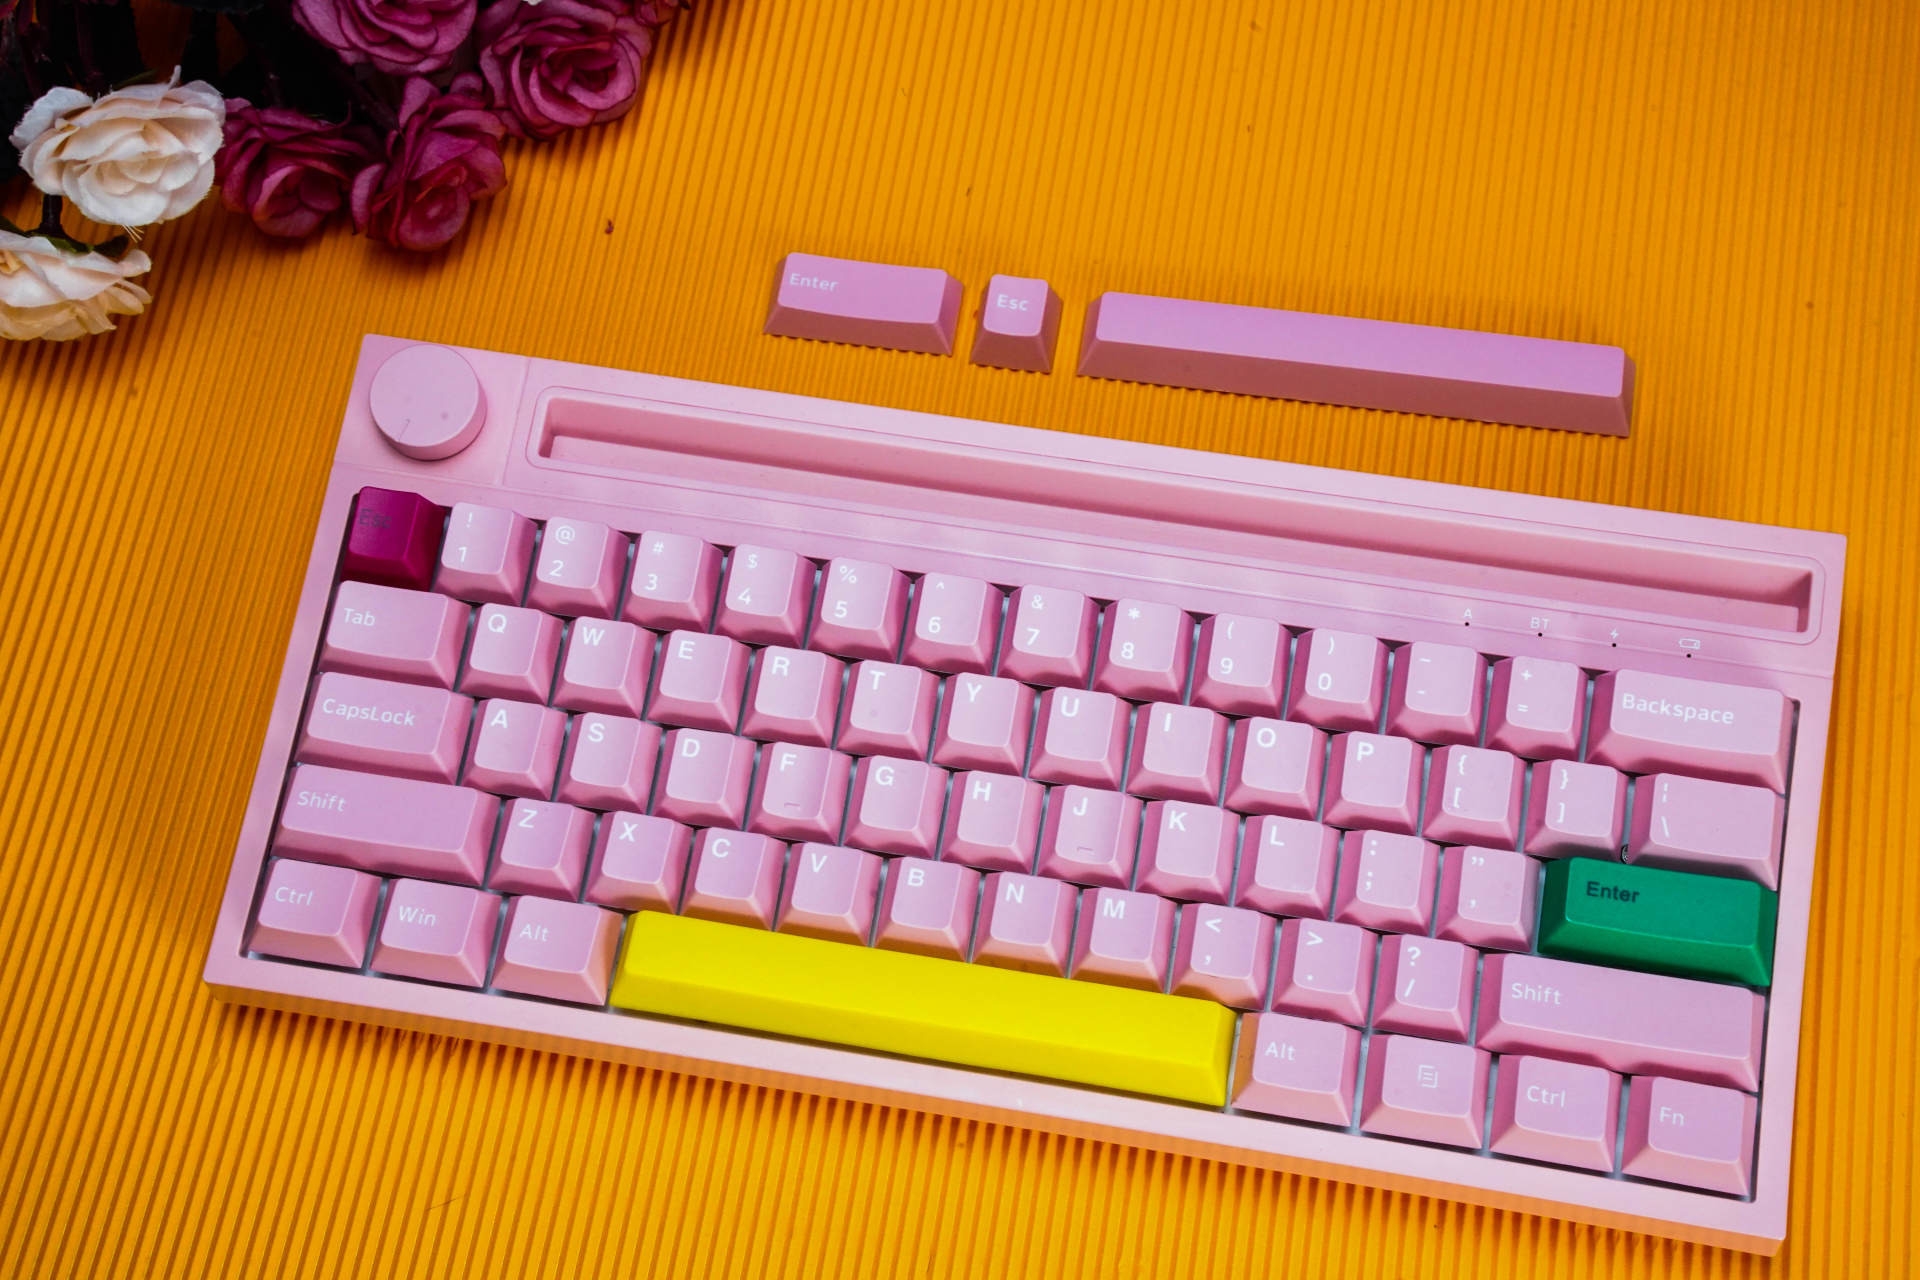 每个女生都有公主梦，送老婆个粉色黑爵K620T双模机械键盘做礼物